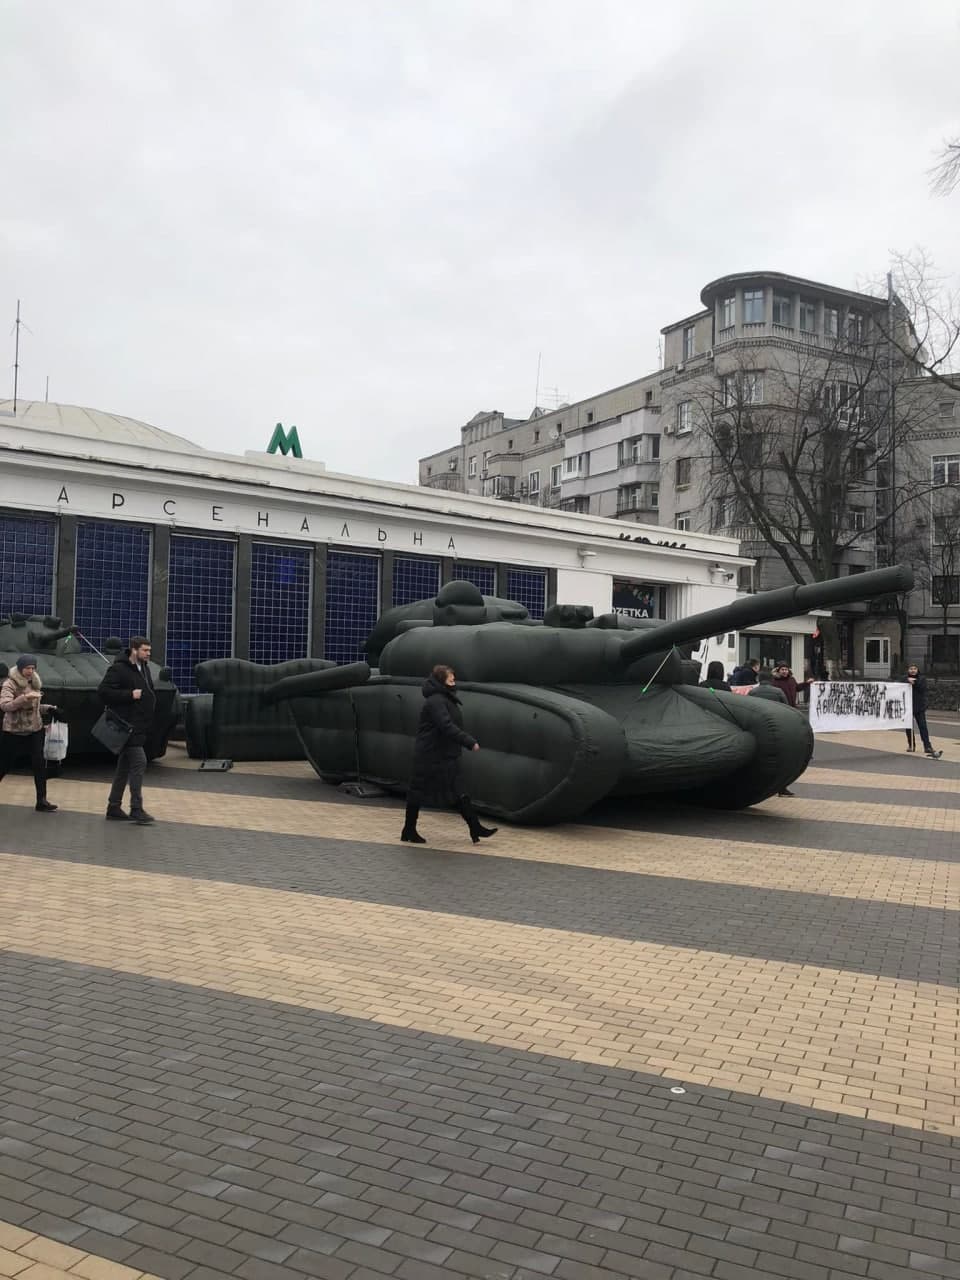 Надувной танк у метро Арсенальная. Скриншот из фейсбука